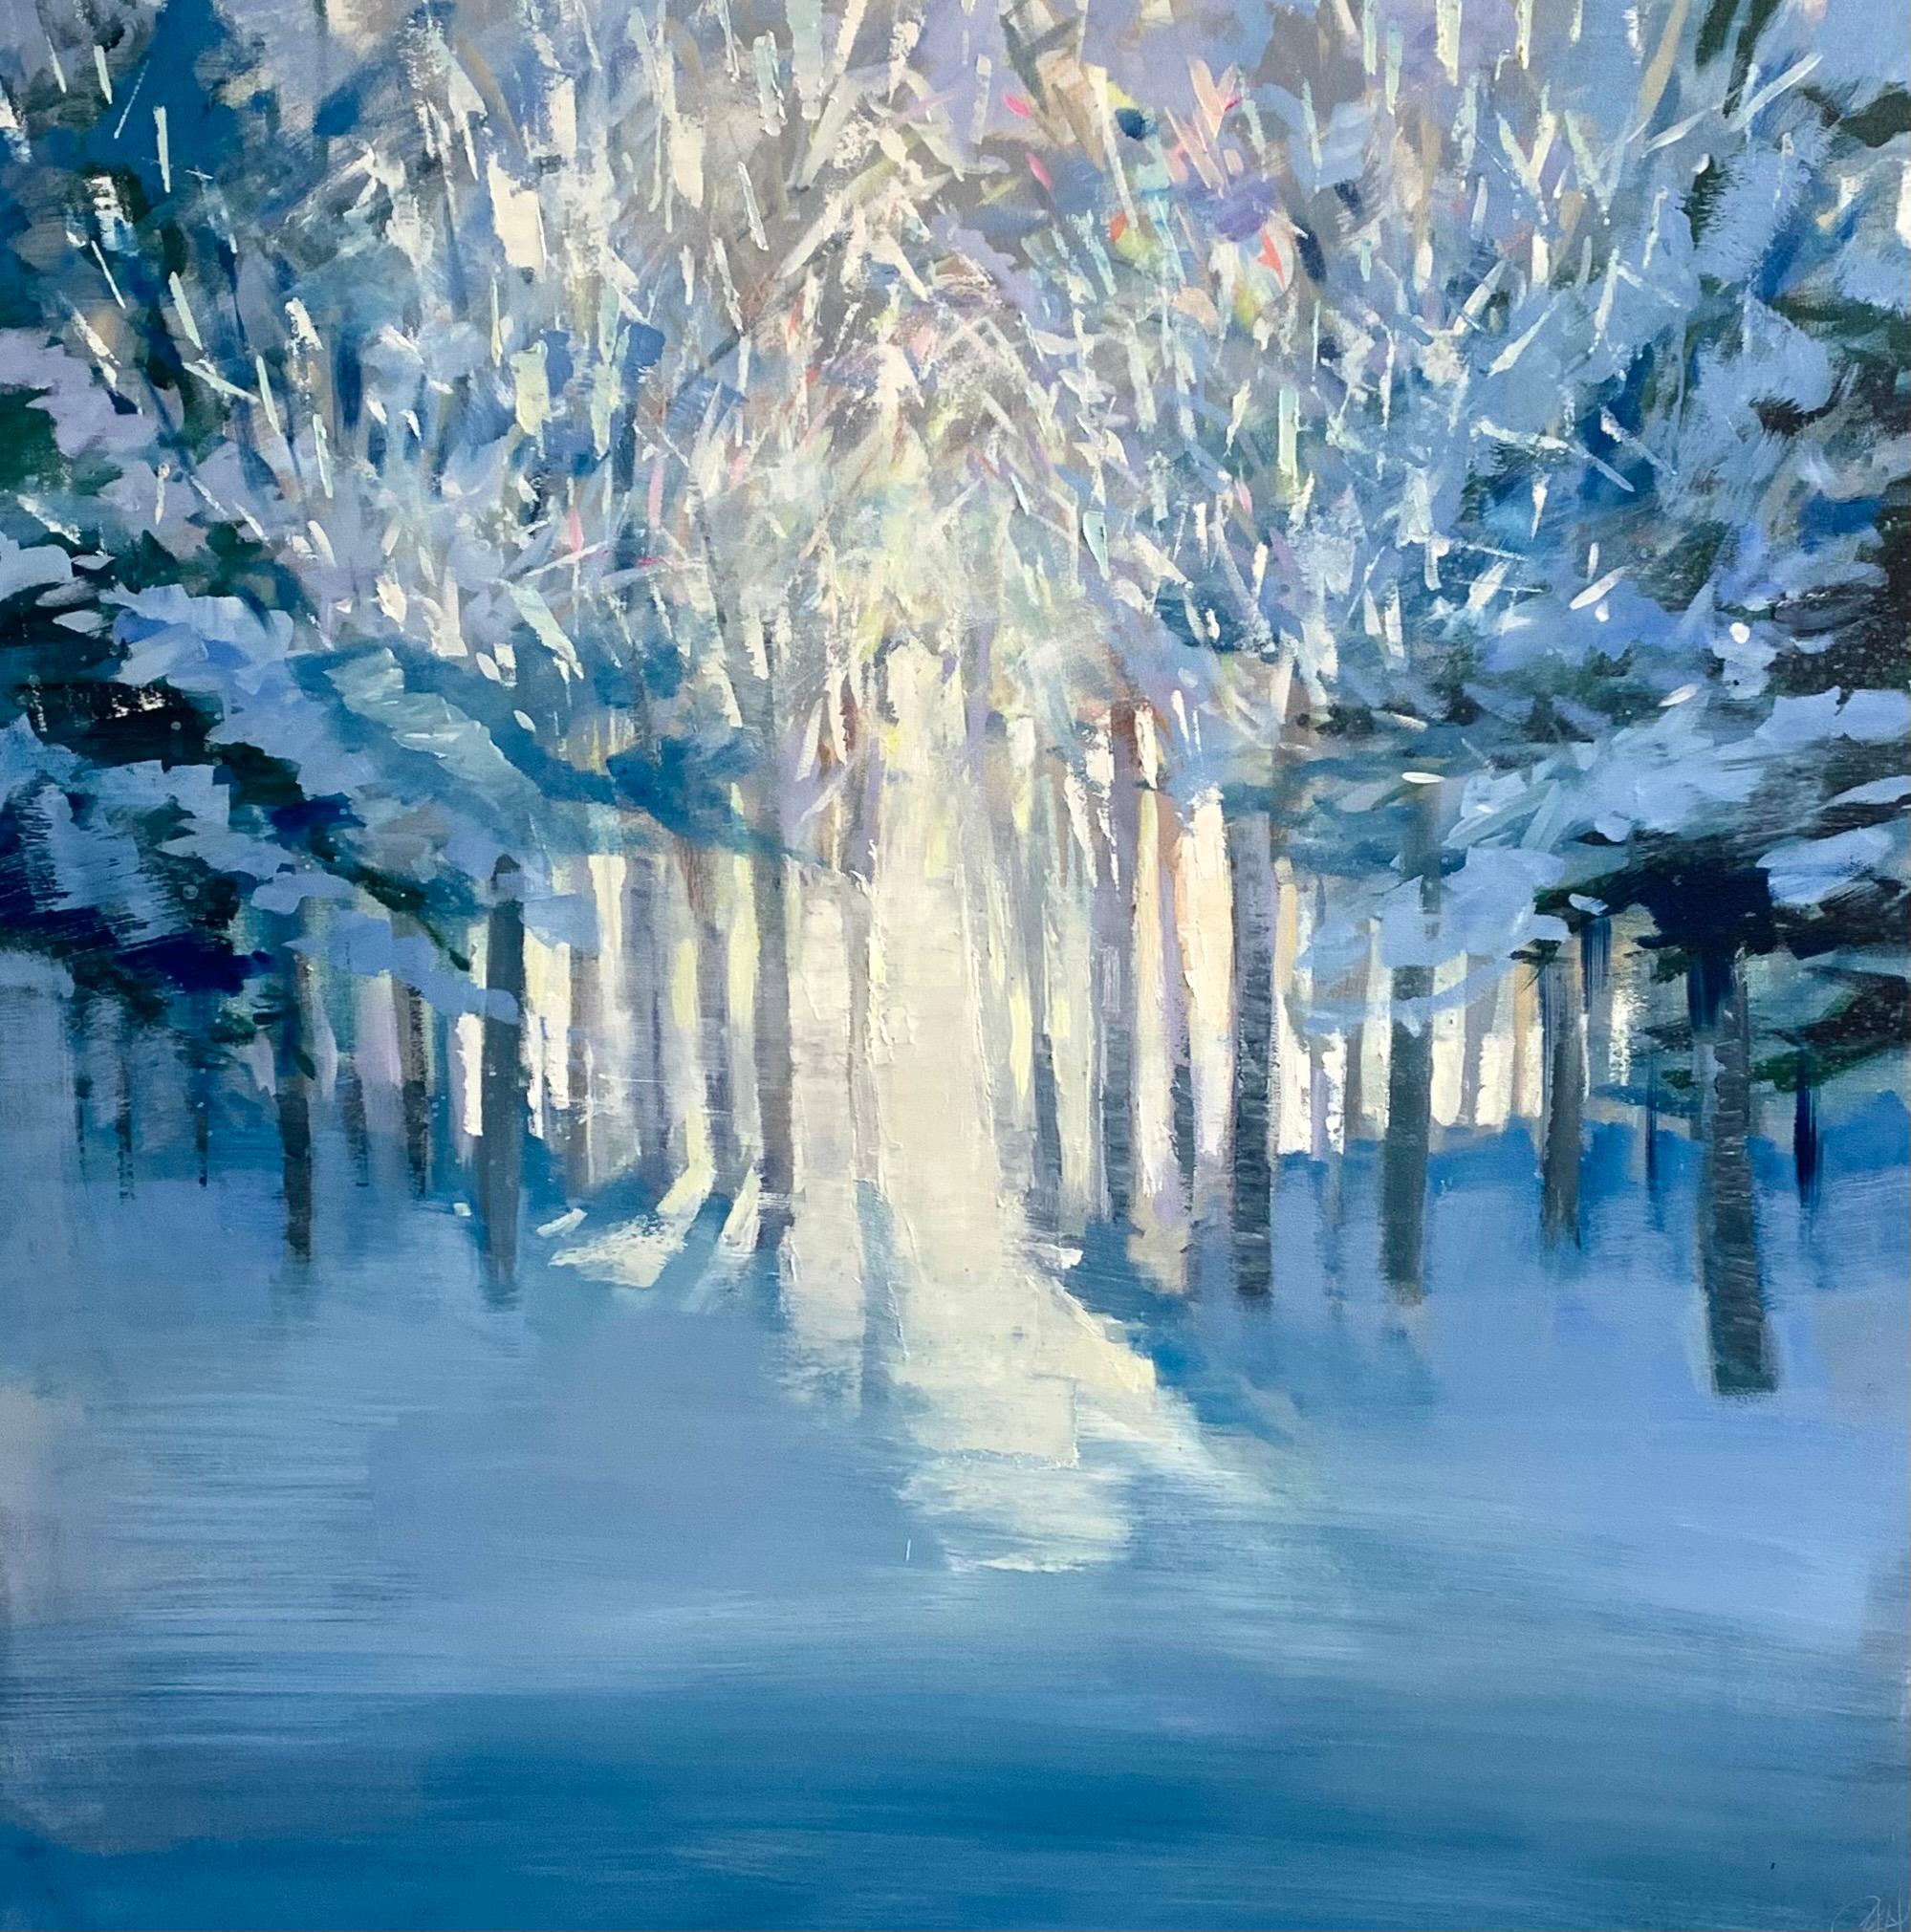 Cette œuvre, "Winter Path", est un paysage d'hiver 46x46 peinture à l'huile sur toile par l'artiste Craig Mooney présentant une vue dans les bois enneigés sur un jour d'hiver lumineux. Les ombres bleues froides projetées par les arbres mènent à la